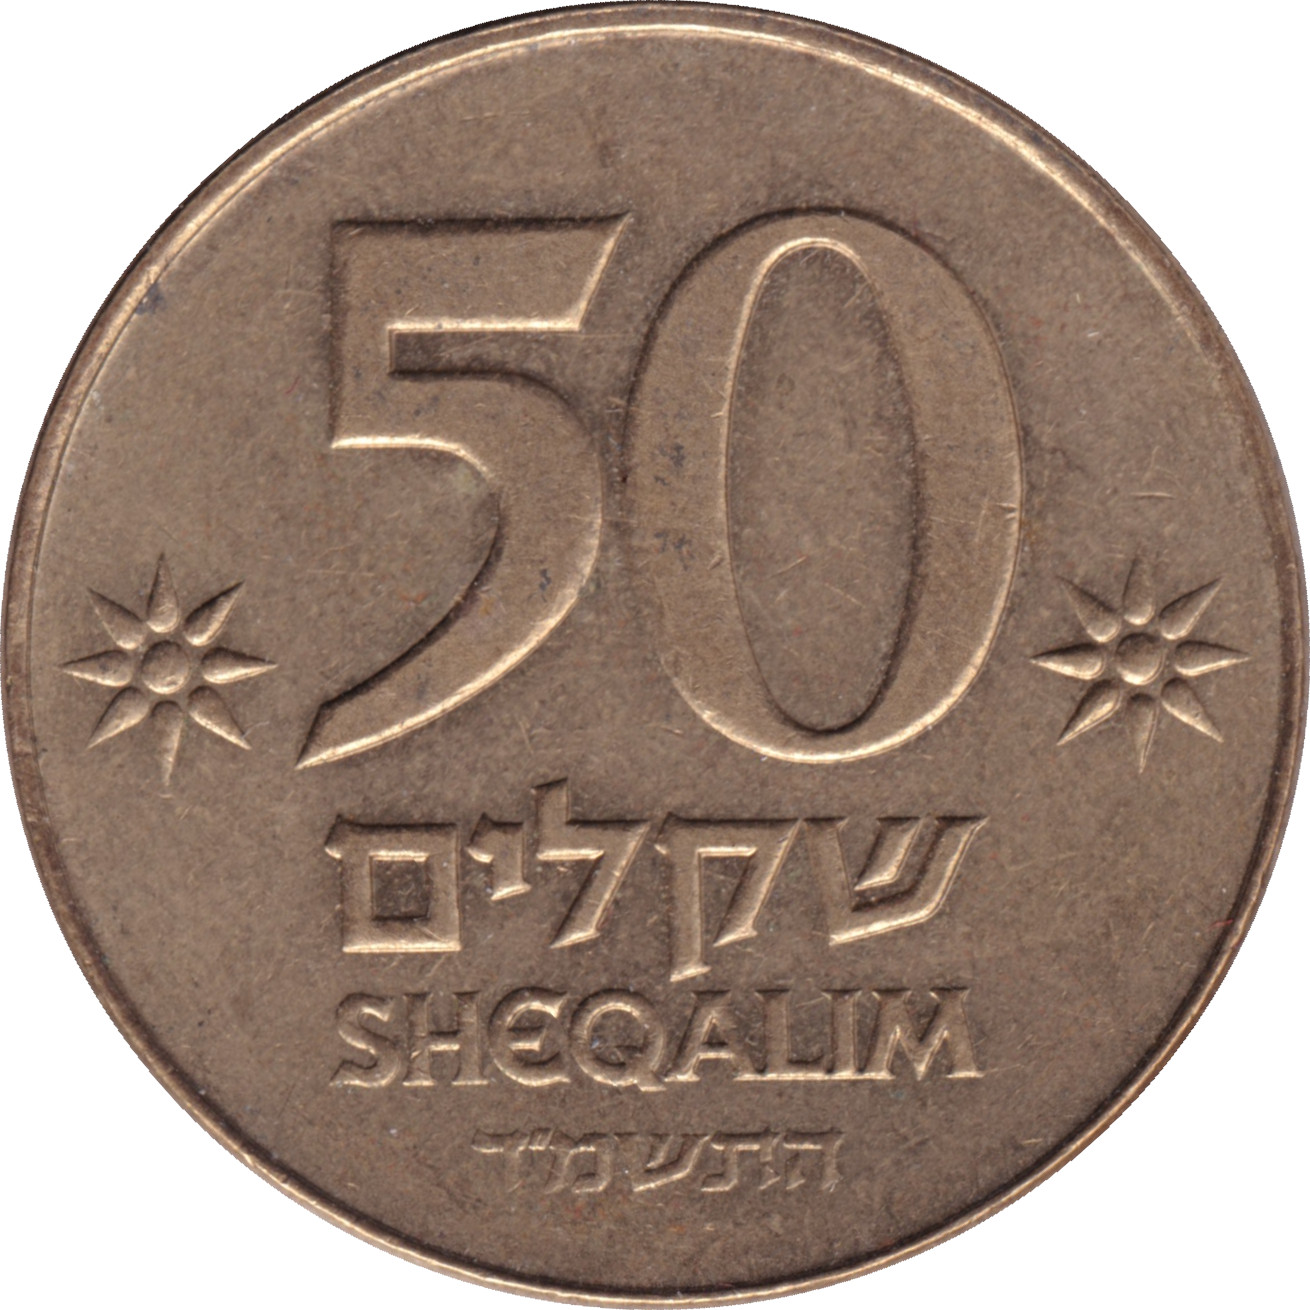 50 sheqalim - Ancienne monnaie